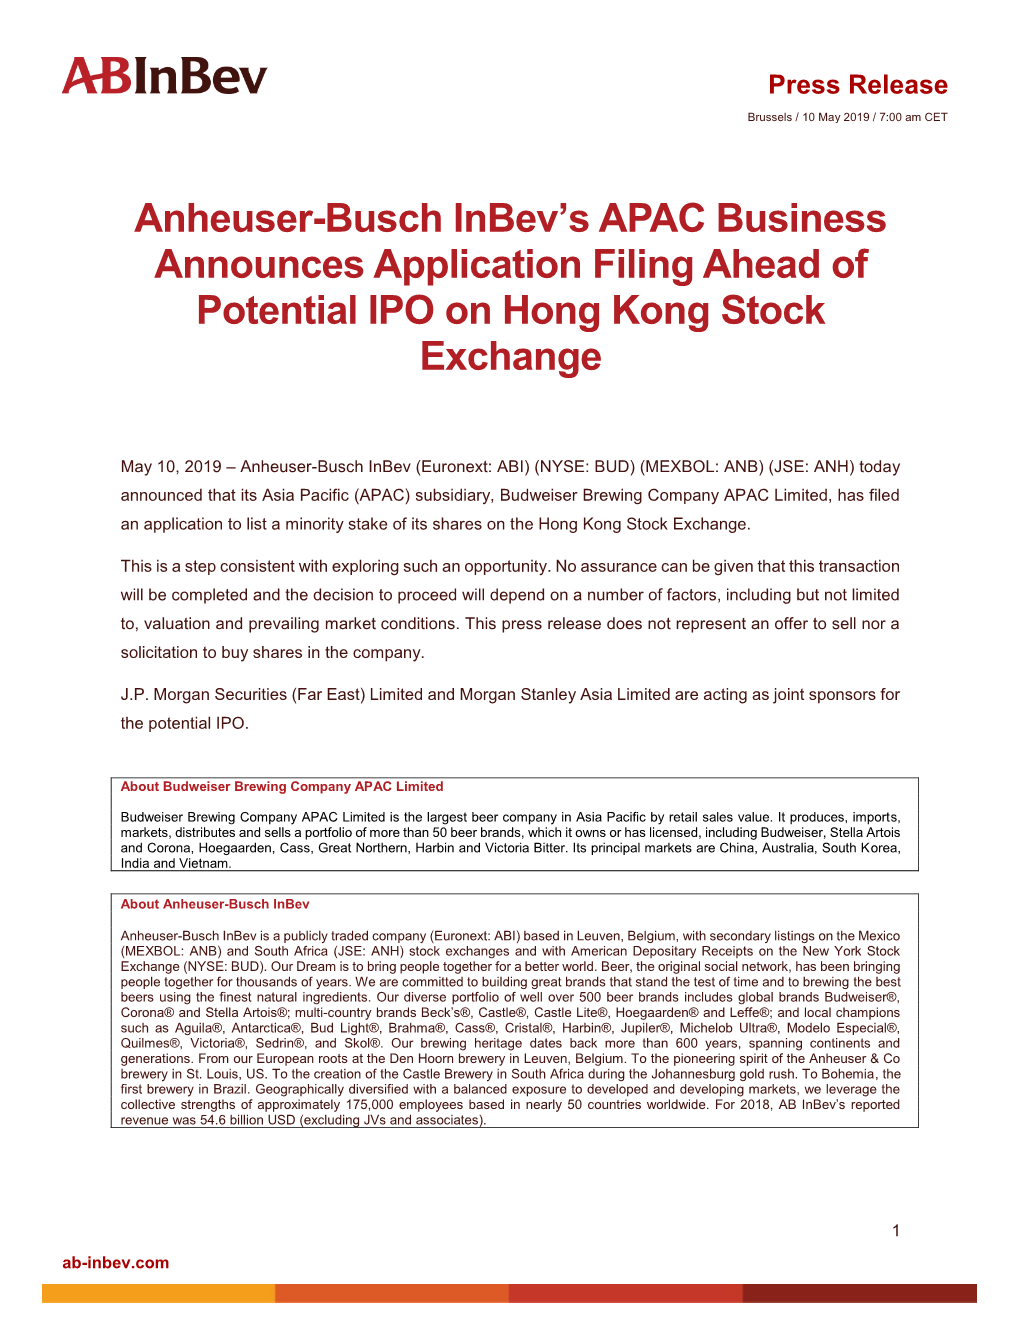 Anheuser-Busch Inbev's APAC Business Announces Application